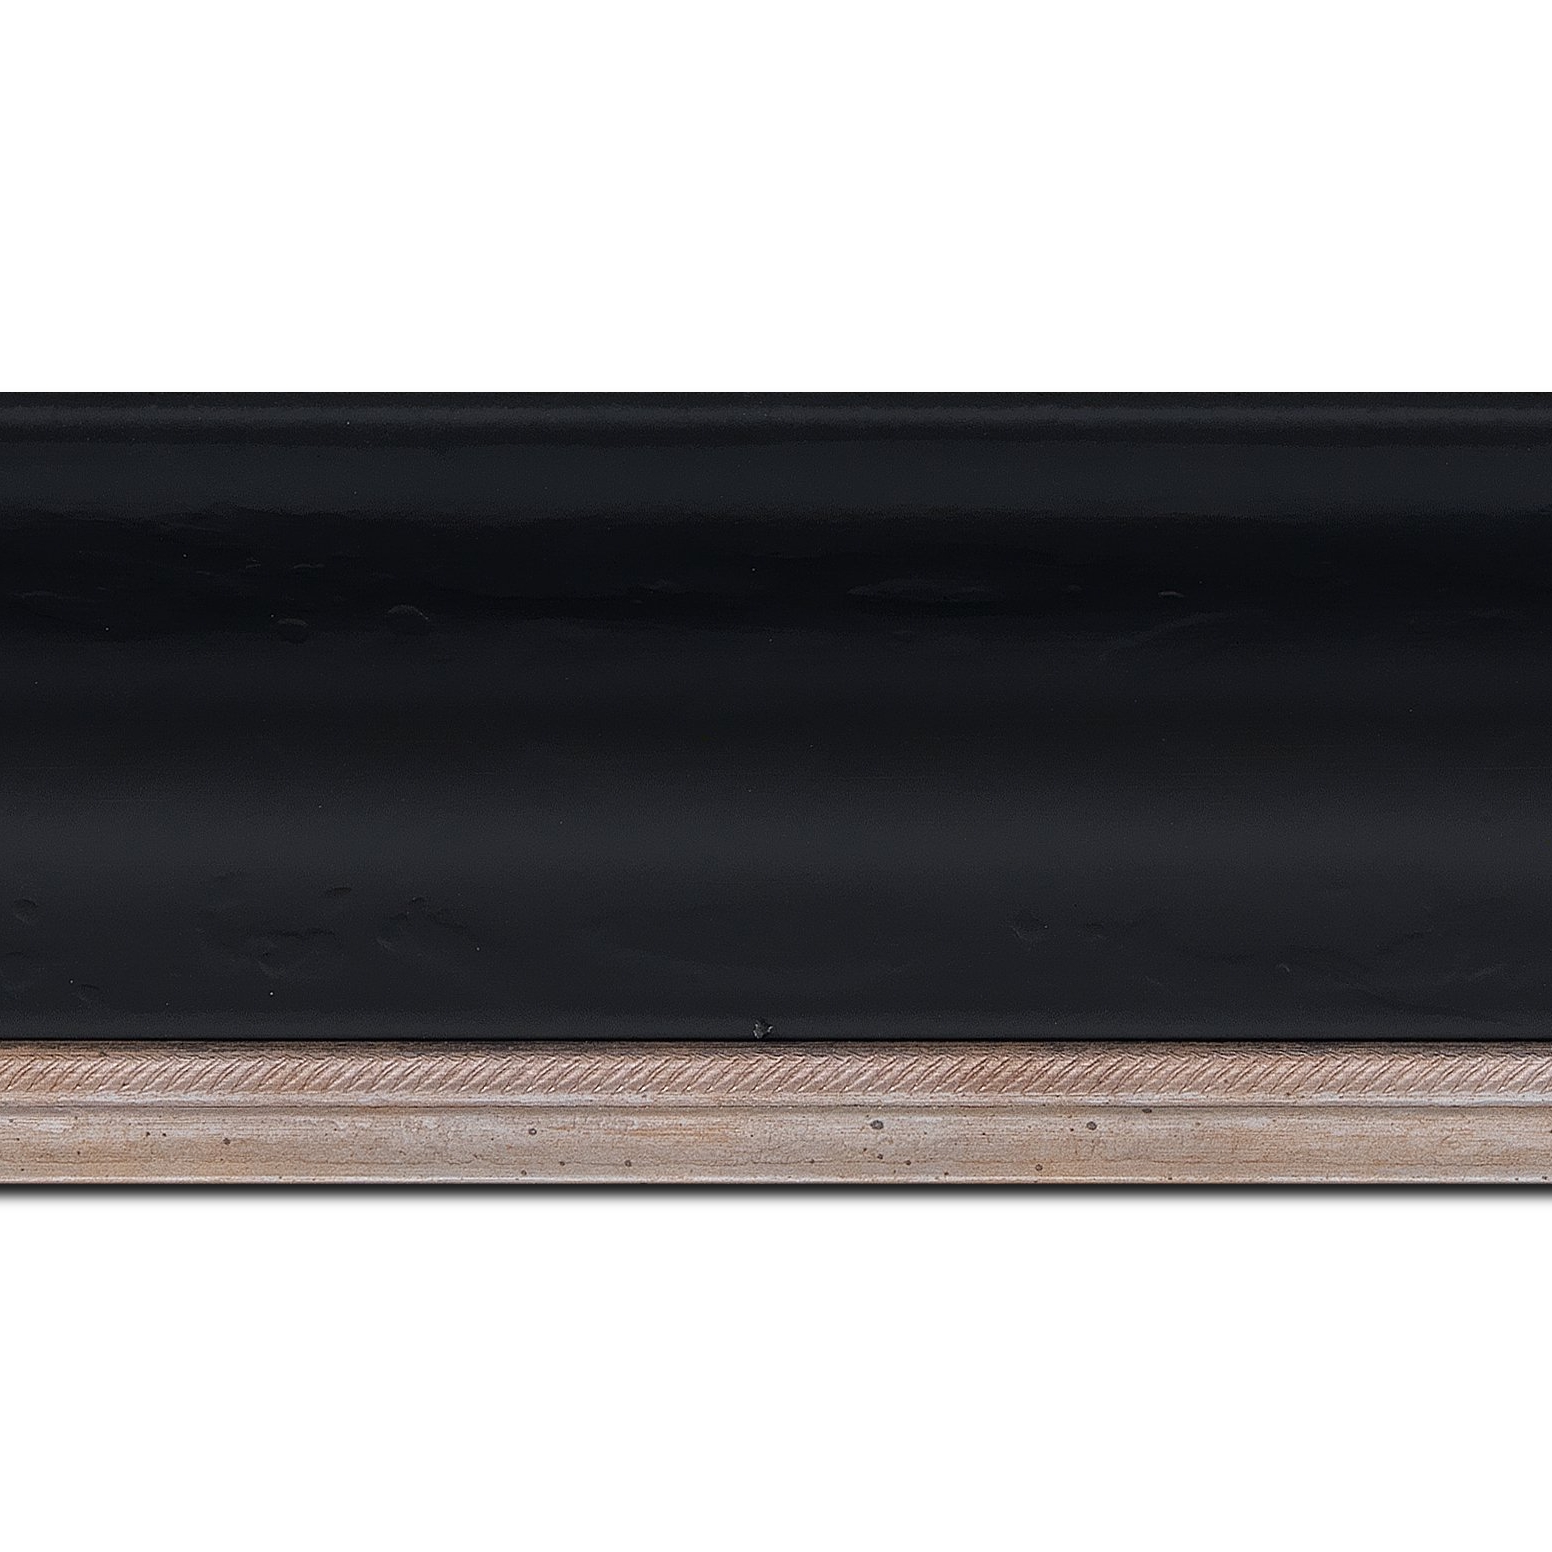 Pack par 12m, bois profil incurvé largeur 7.5cm de couleur noir finition antique filet argent vermeille (longueur baguette pouvant varier entre 2.40m et 3m selon arrivage des bois)